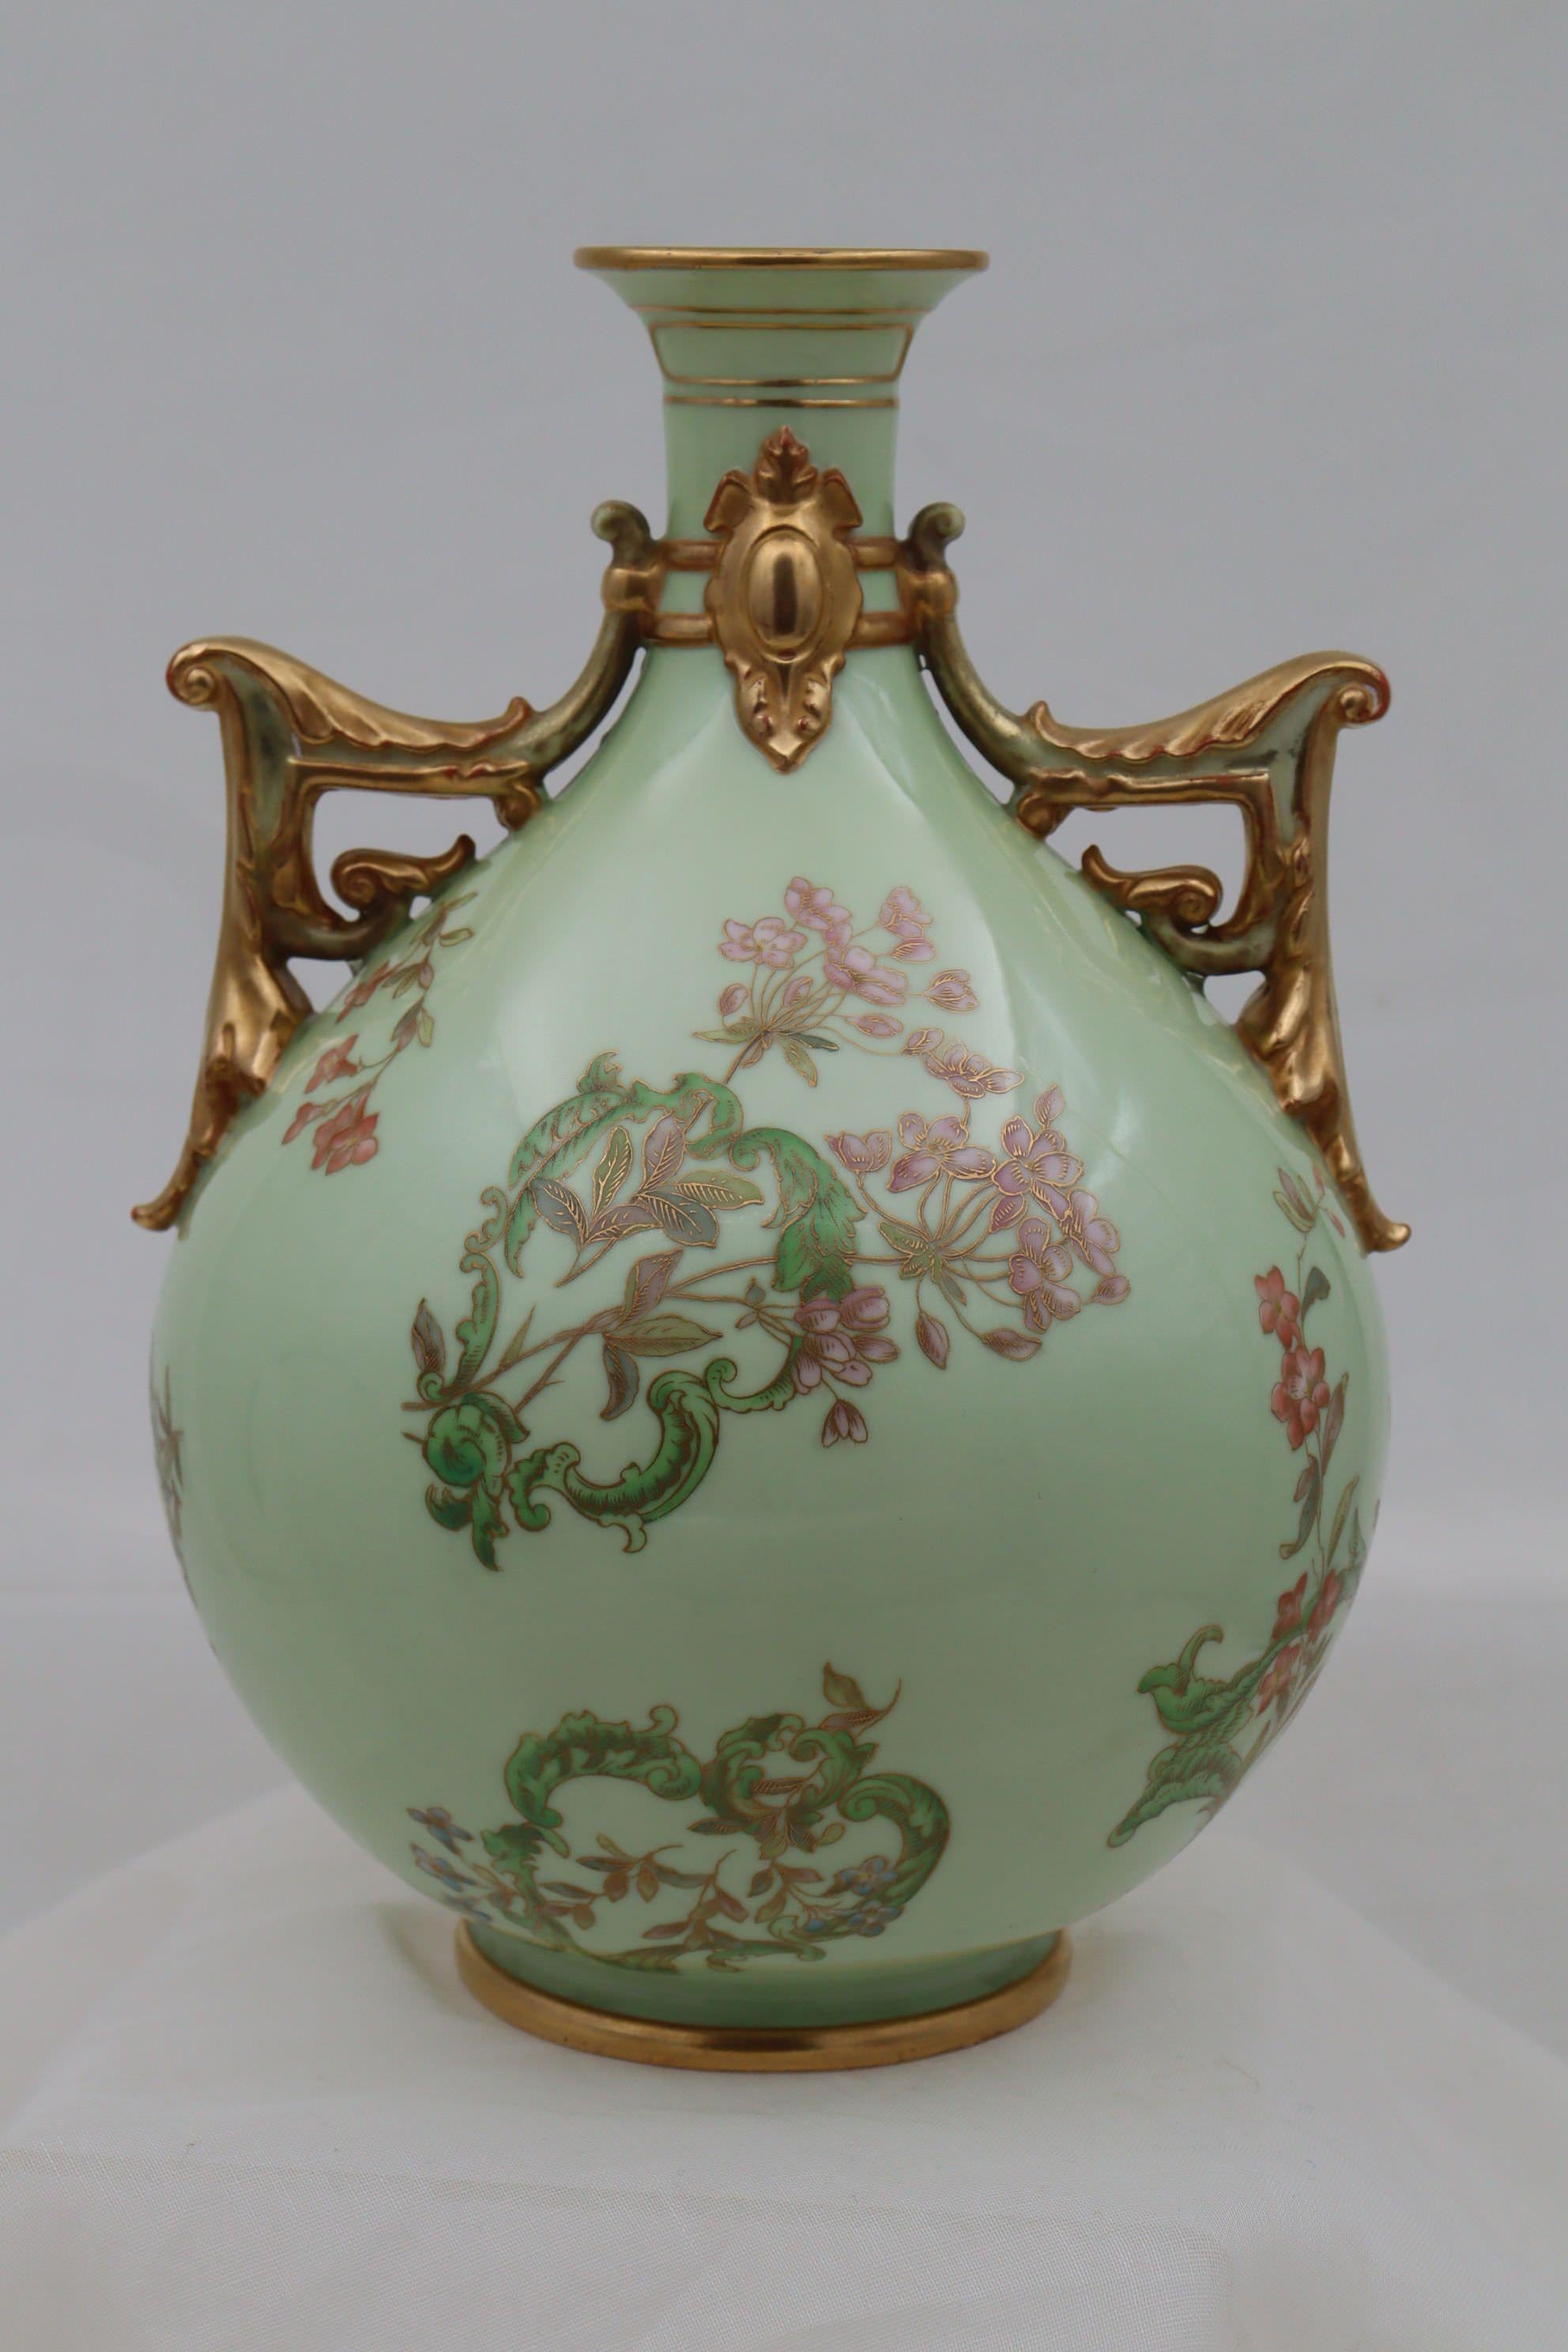 Ce vase à deux anses en porcelaine globulaire de Royal Worcester présente un décor inhabituel, peint à la main et doré, qui comprend une série de cartouches de forme irrégulière formés par des feuillages stylisés, à travers lesquels sont enfilées